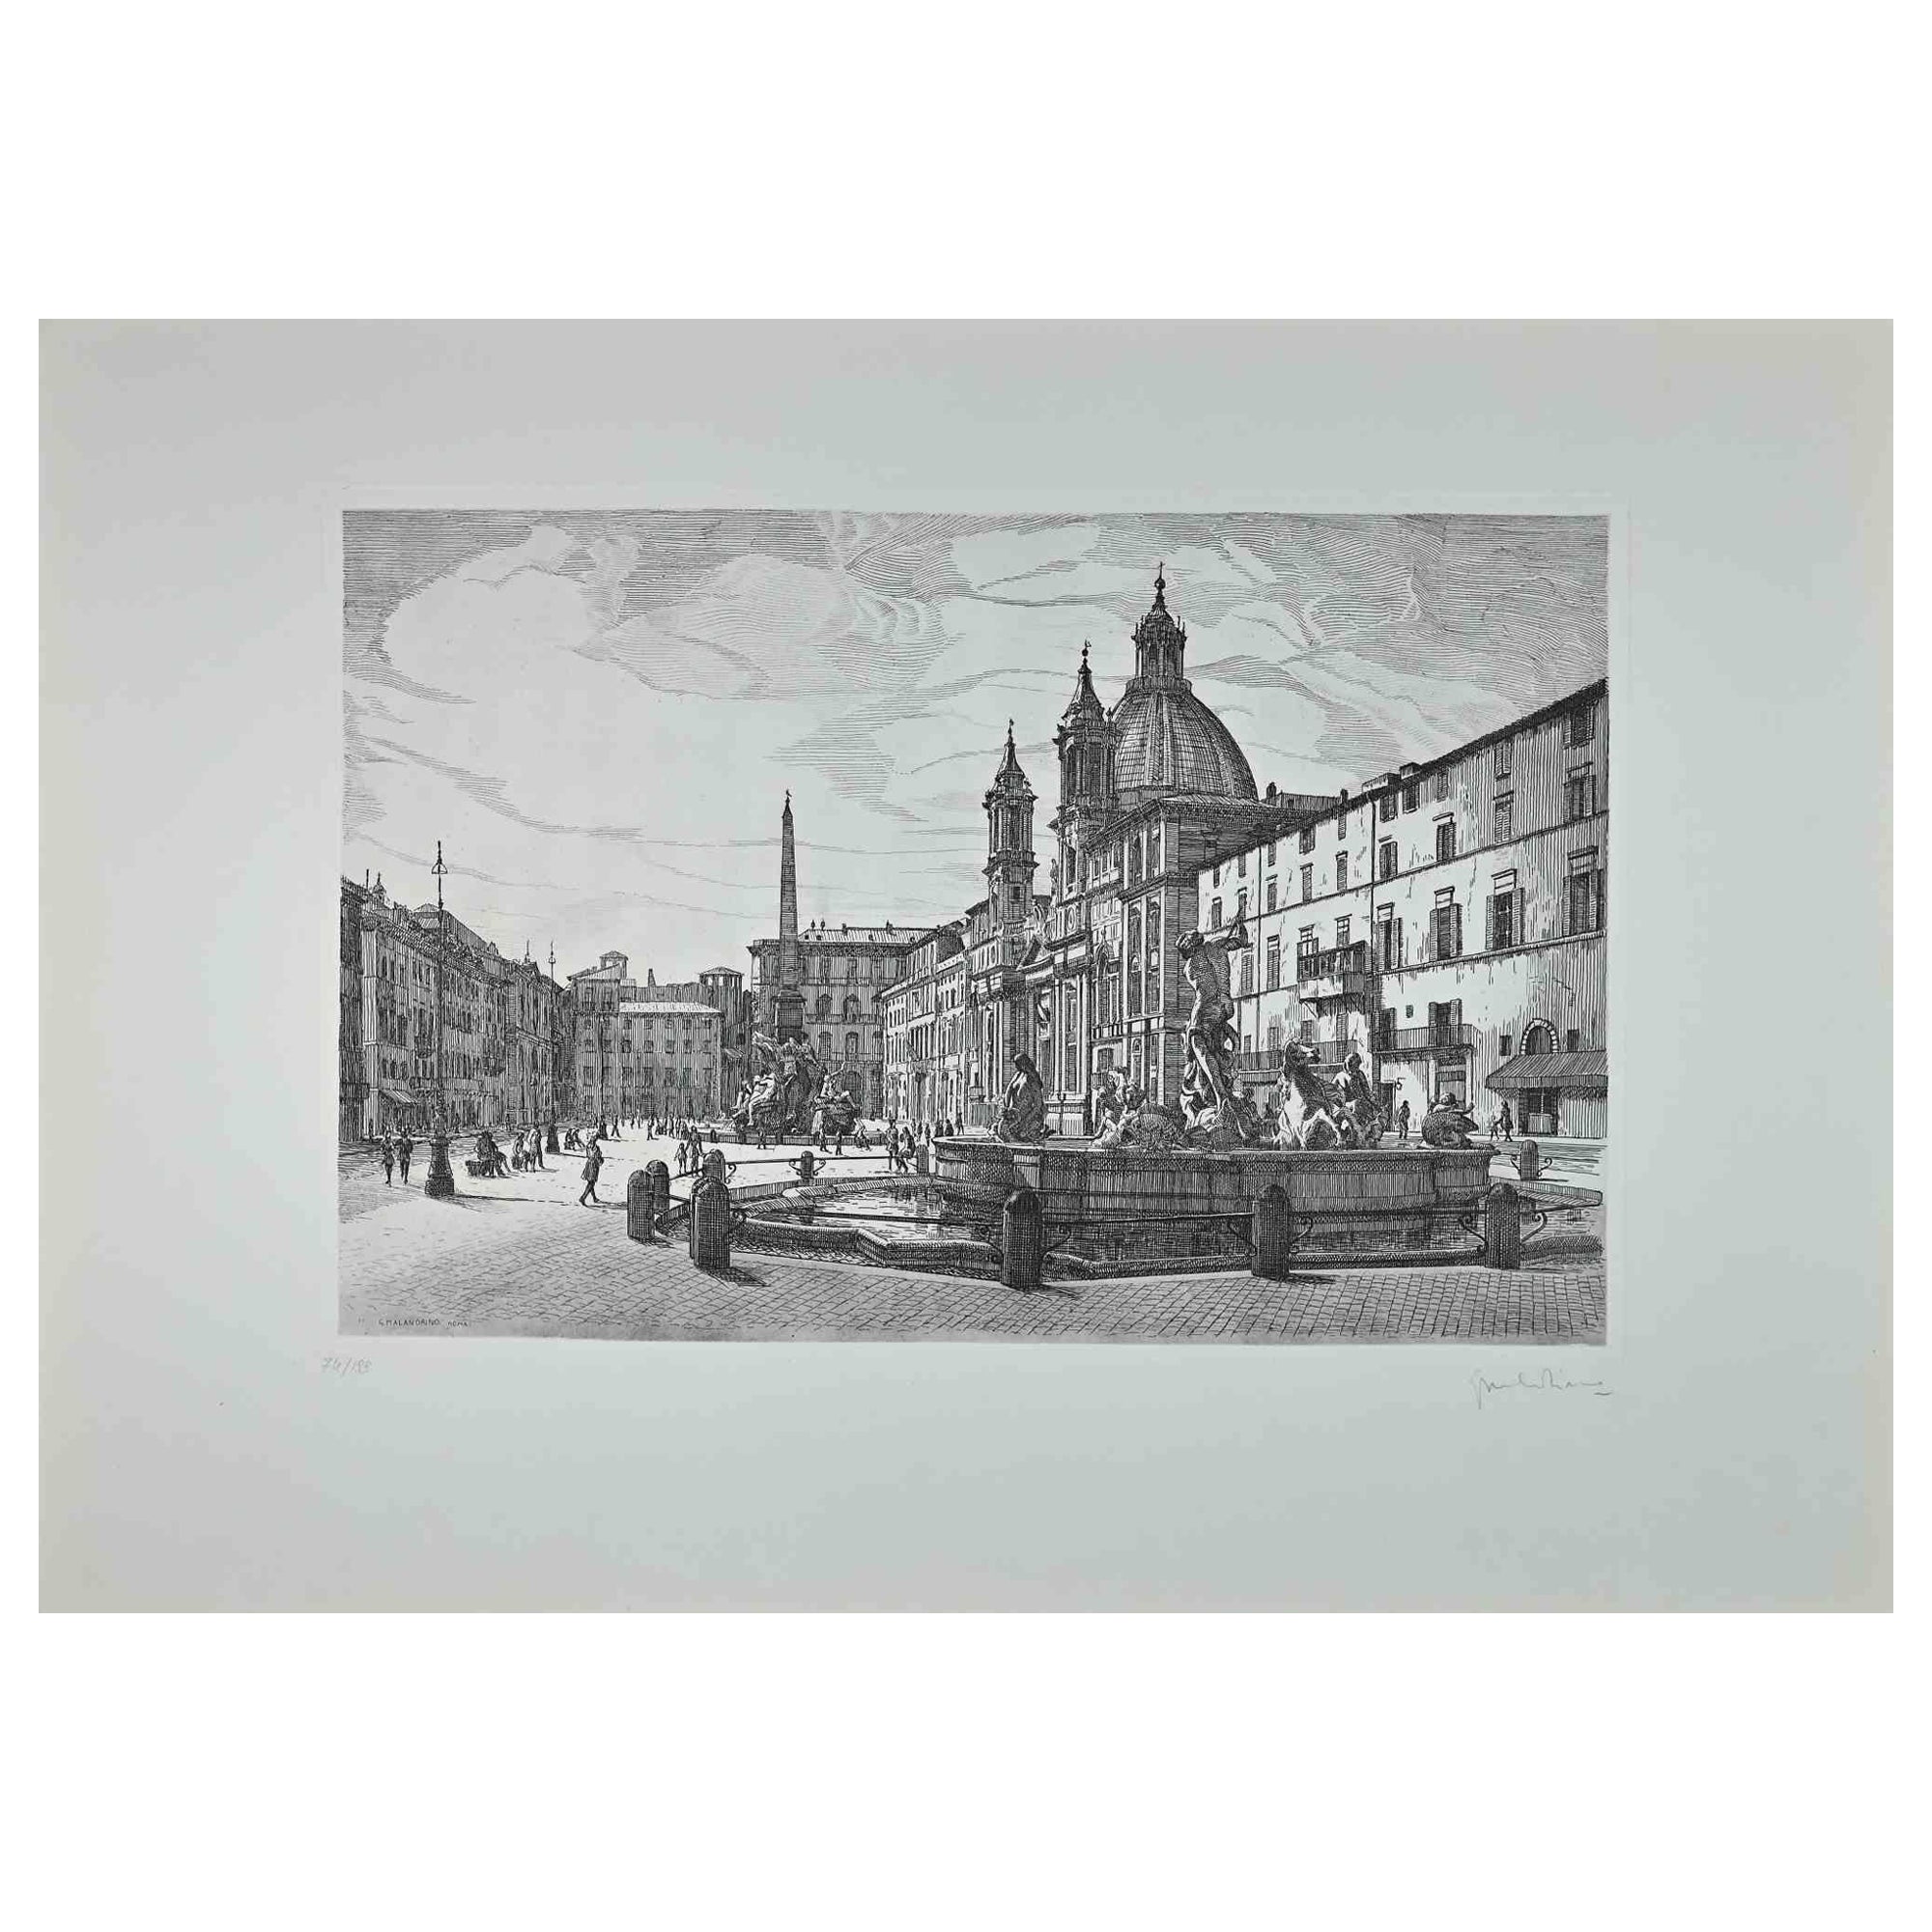 Der Blick auf die Piazza Navona ist ein originales zeitgenössisches Kunstwerk des italienischen Künstlers Giuseppe Malandrino aus dem Jahr 1970  (Modica, 1910 - Rom, 1979).
 
Radierung auf Karton.
 
Handsigniert mit Bleistift in der rechten unteren